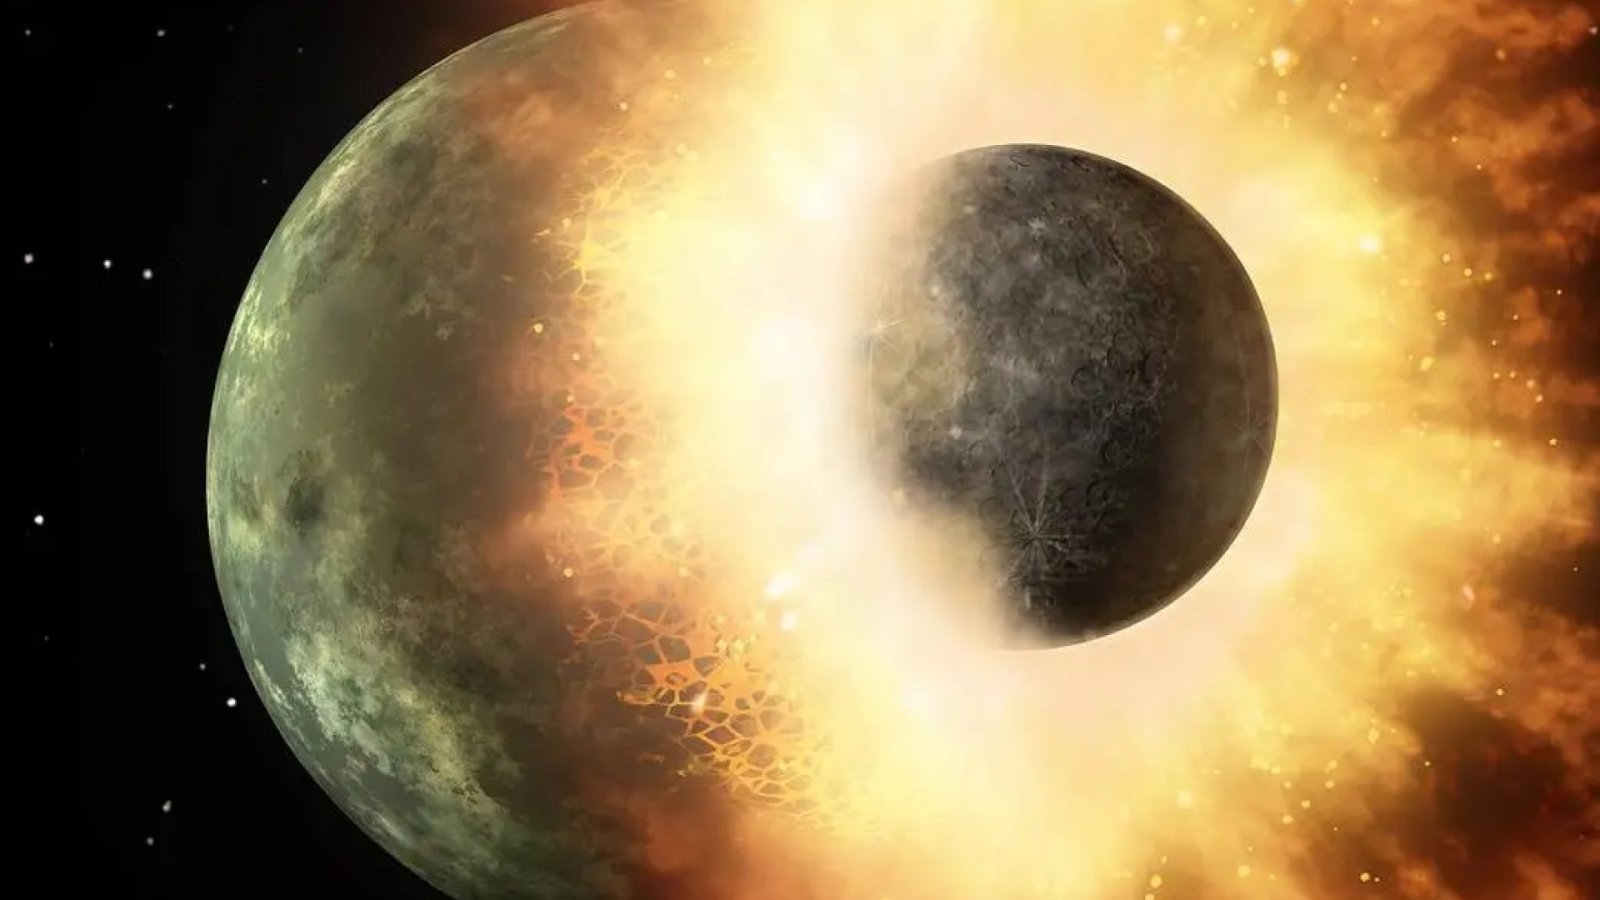 ก้อนประหลาดในเนื้อโลกสนับสนุนทฤษฎีการชนกันครั้งใหญ่ที่ทำให้เกิดดวงจันทร์